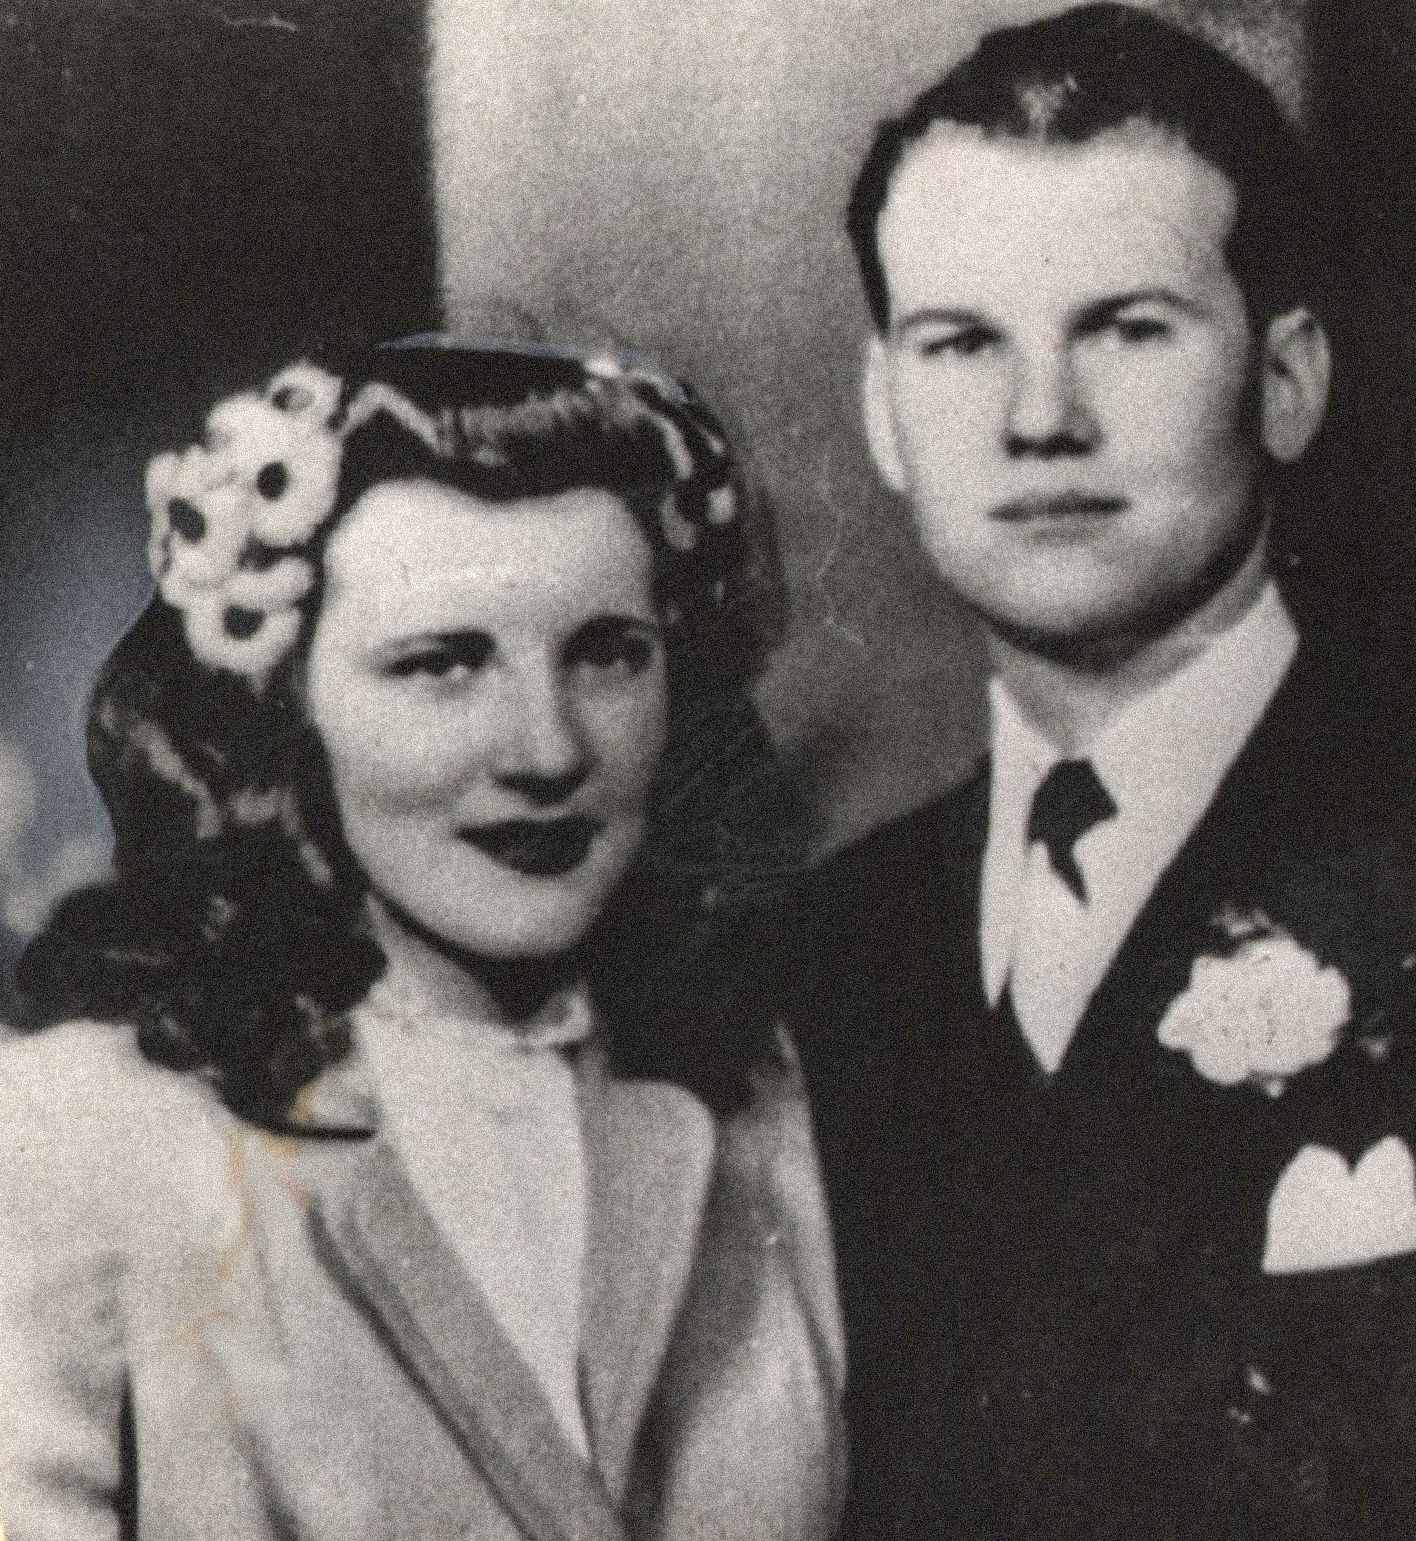 Aquí están Sam y Marilyn Sheppard, una pareja joven y aparentemente feliz.  Los dos se casaron el 21 de febrero de 1945 y tuvieron un hijo juntos, Sam Reese Sheppard.  Marilyn estaba embarazada de su segundo hijo en el momento de su asesinato.